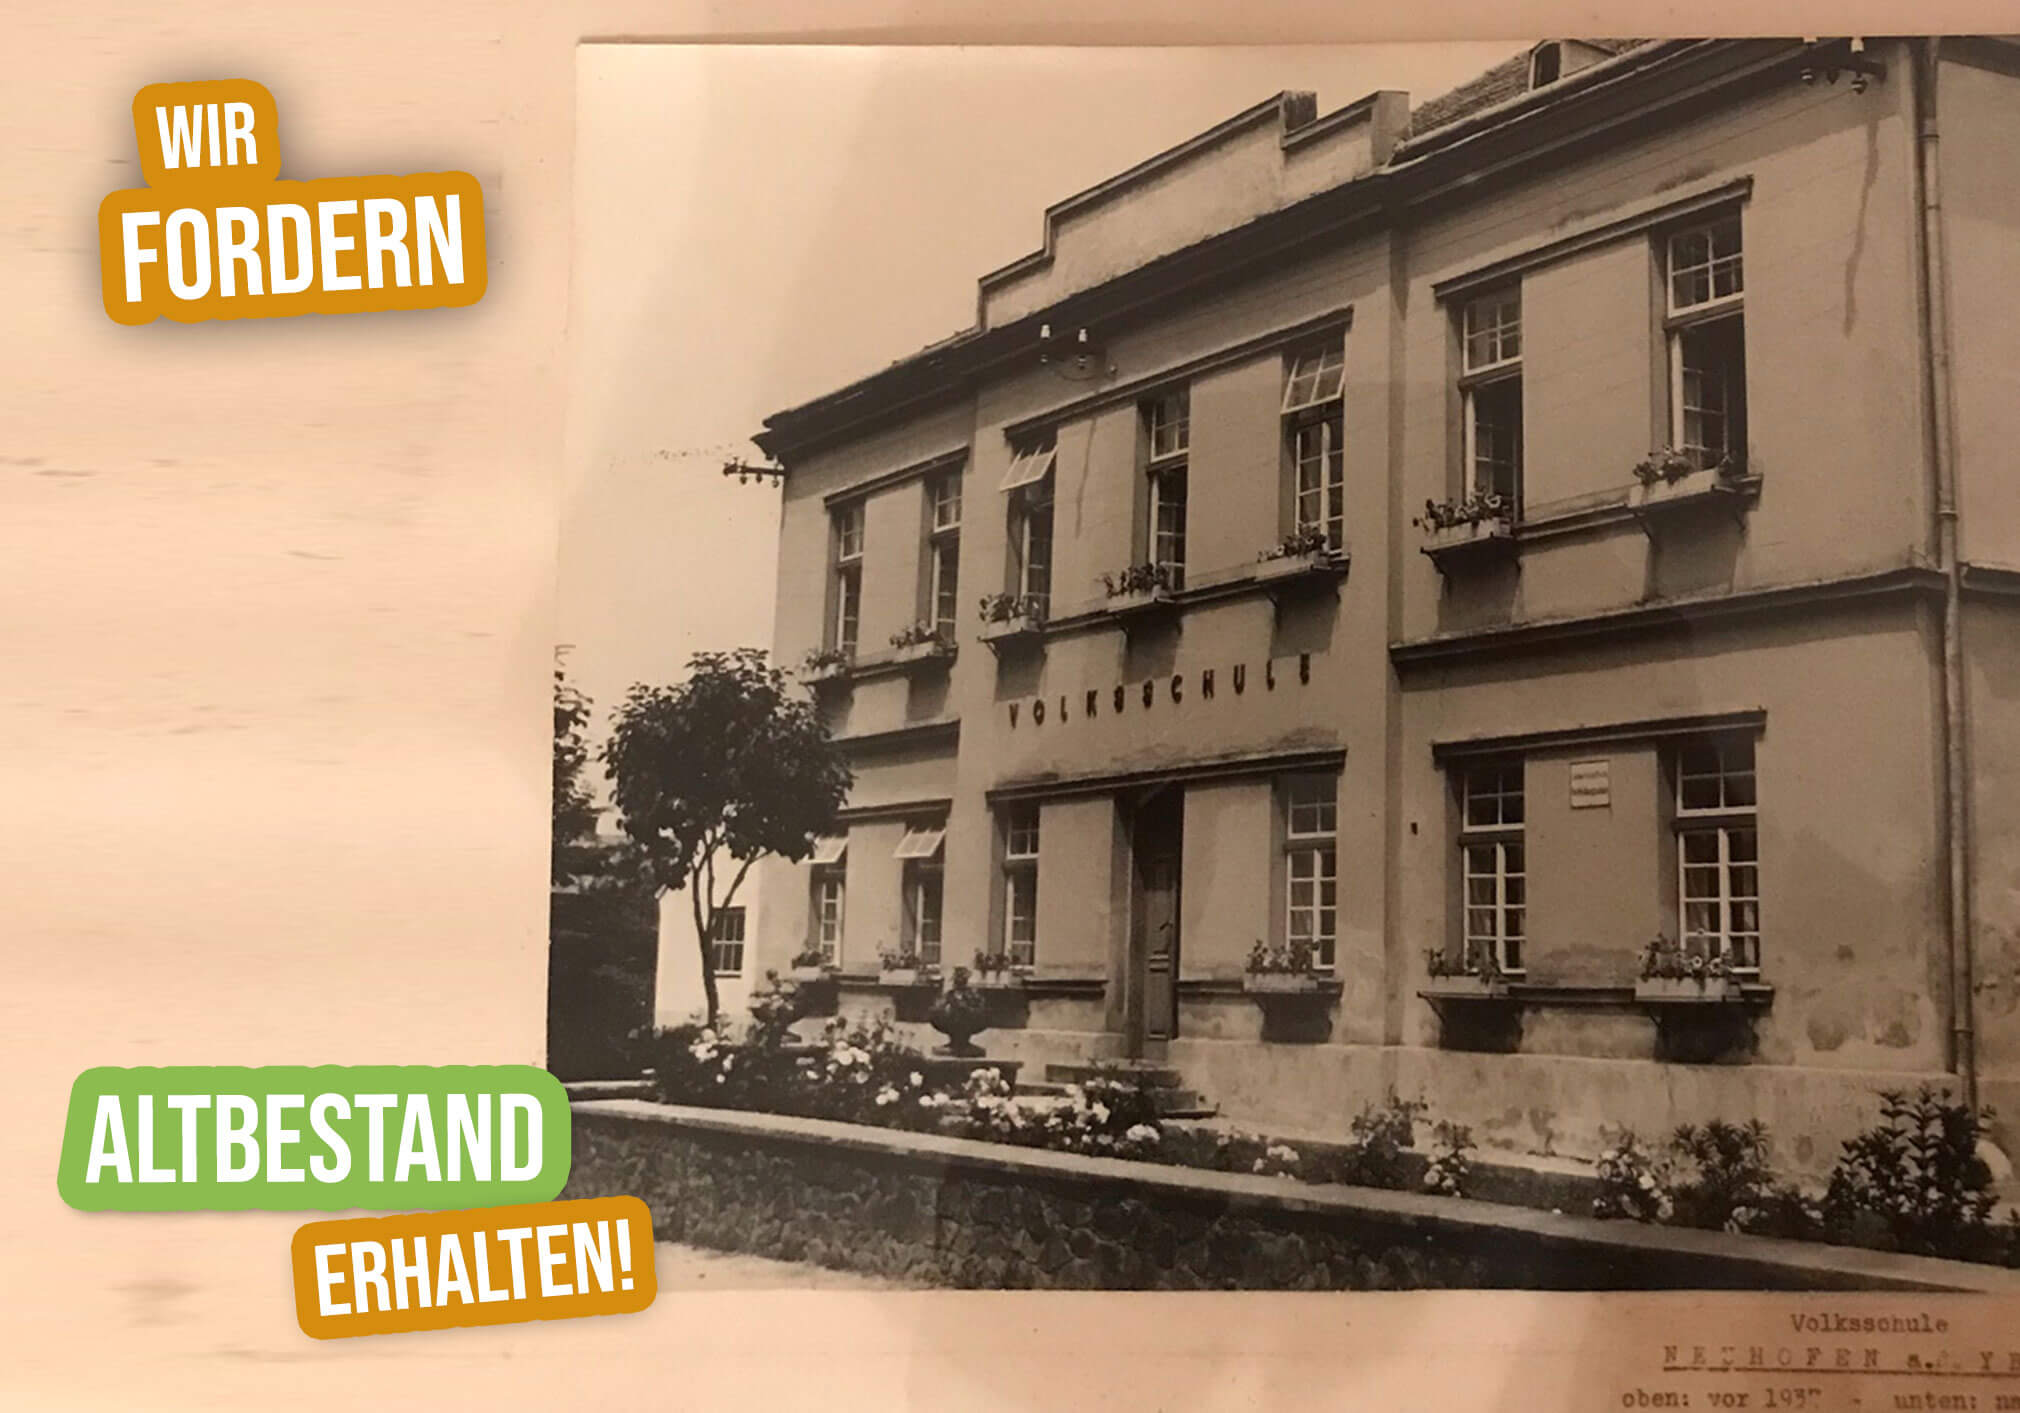 Petition Neuhofen an der Ybbs gegen Bodenversiegelung. Rettet die Grünflächen und Altbestand. Alte Volksschule.